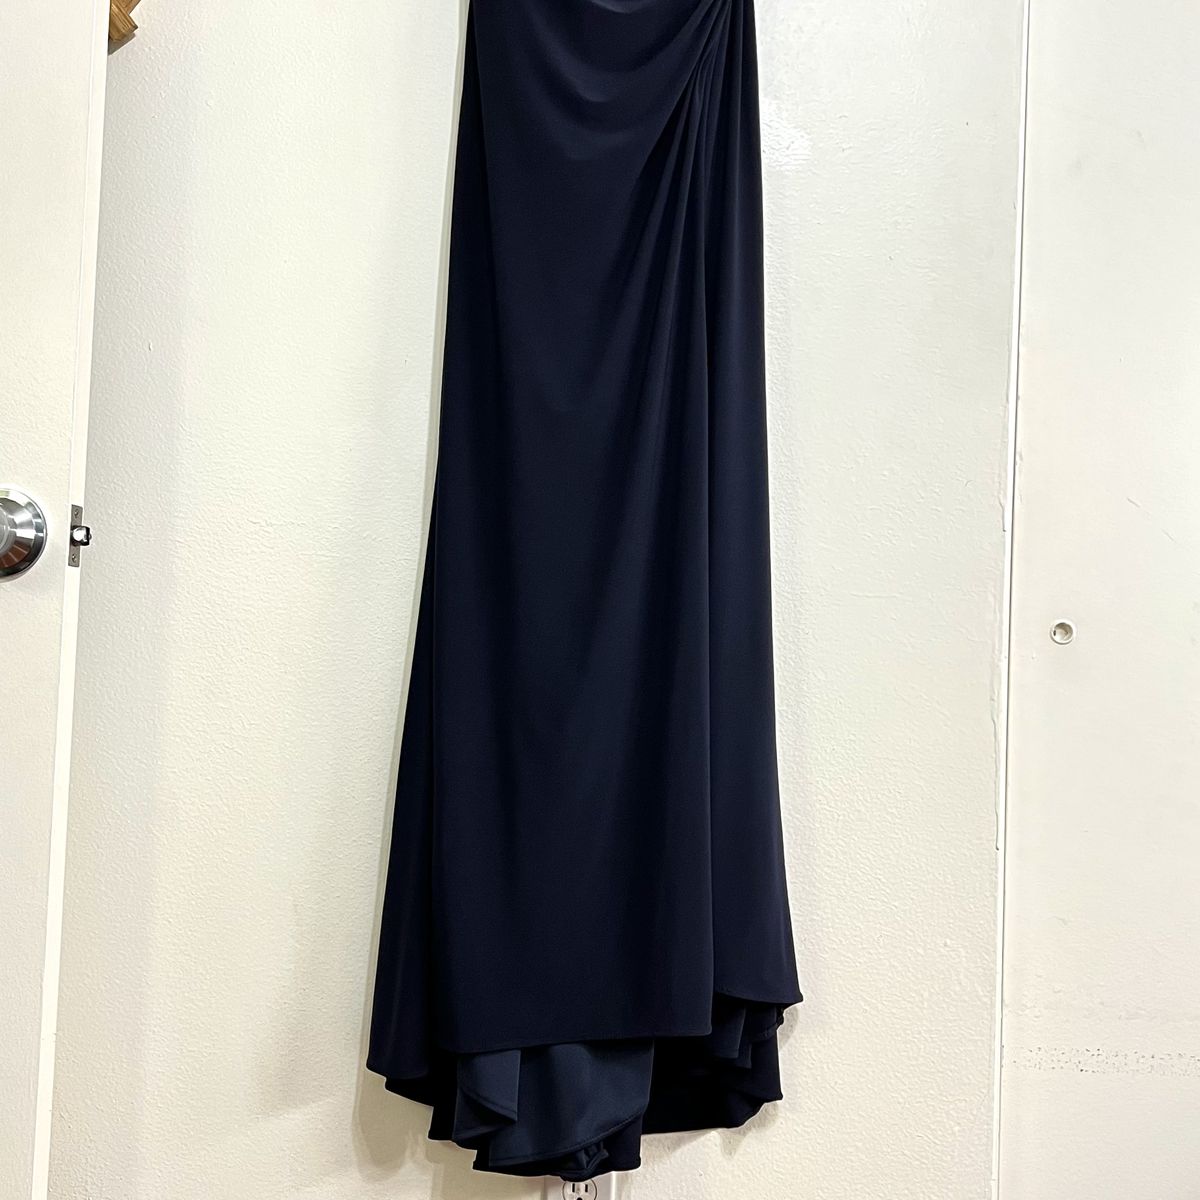 Mac Duggal Size 4 Off The Shoulder Navy Blue Side Slit Dress on Queenly